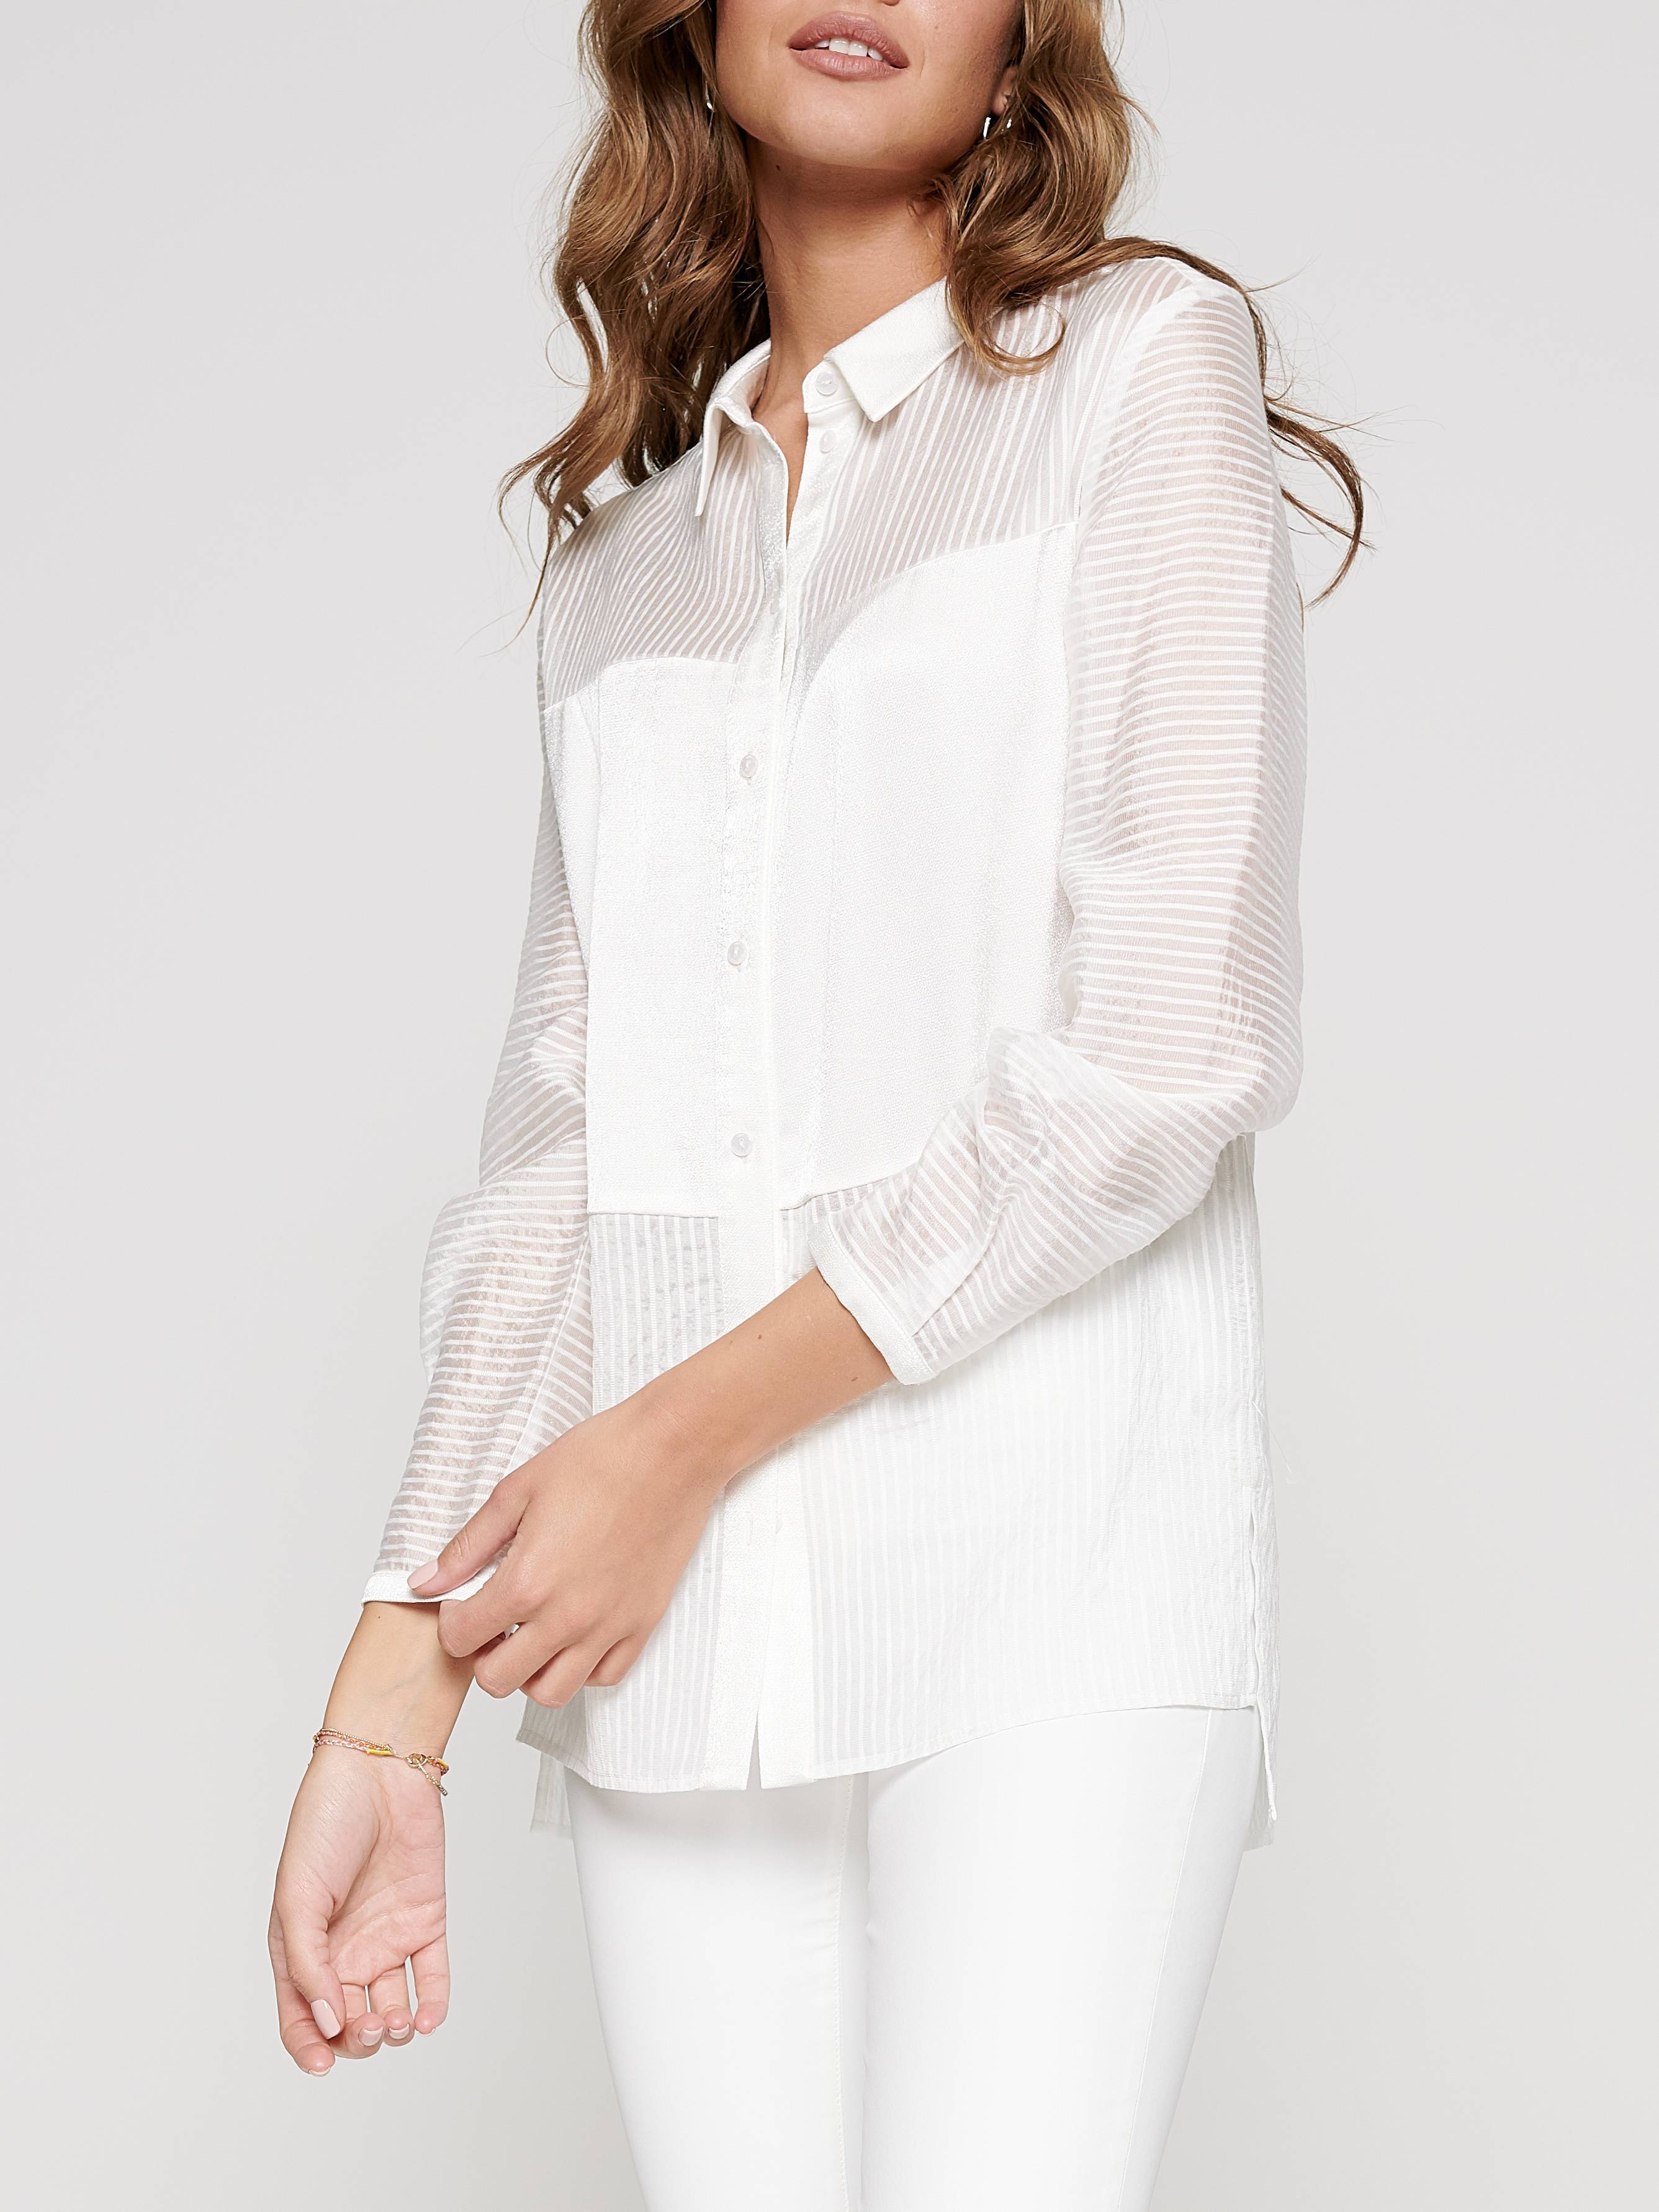 Рубашка в полоску из вискозы премиального качества «ощущение шелка» LBL 1095 Conte ⭐️, цвет off-white, размер 170-100-106 - фото 1